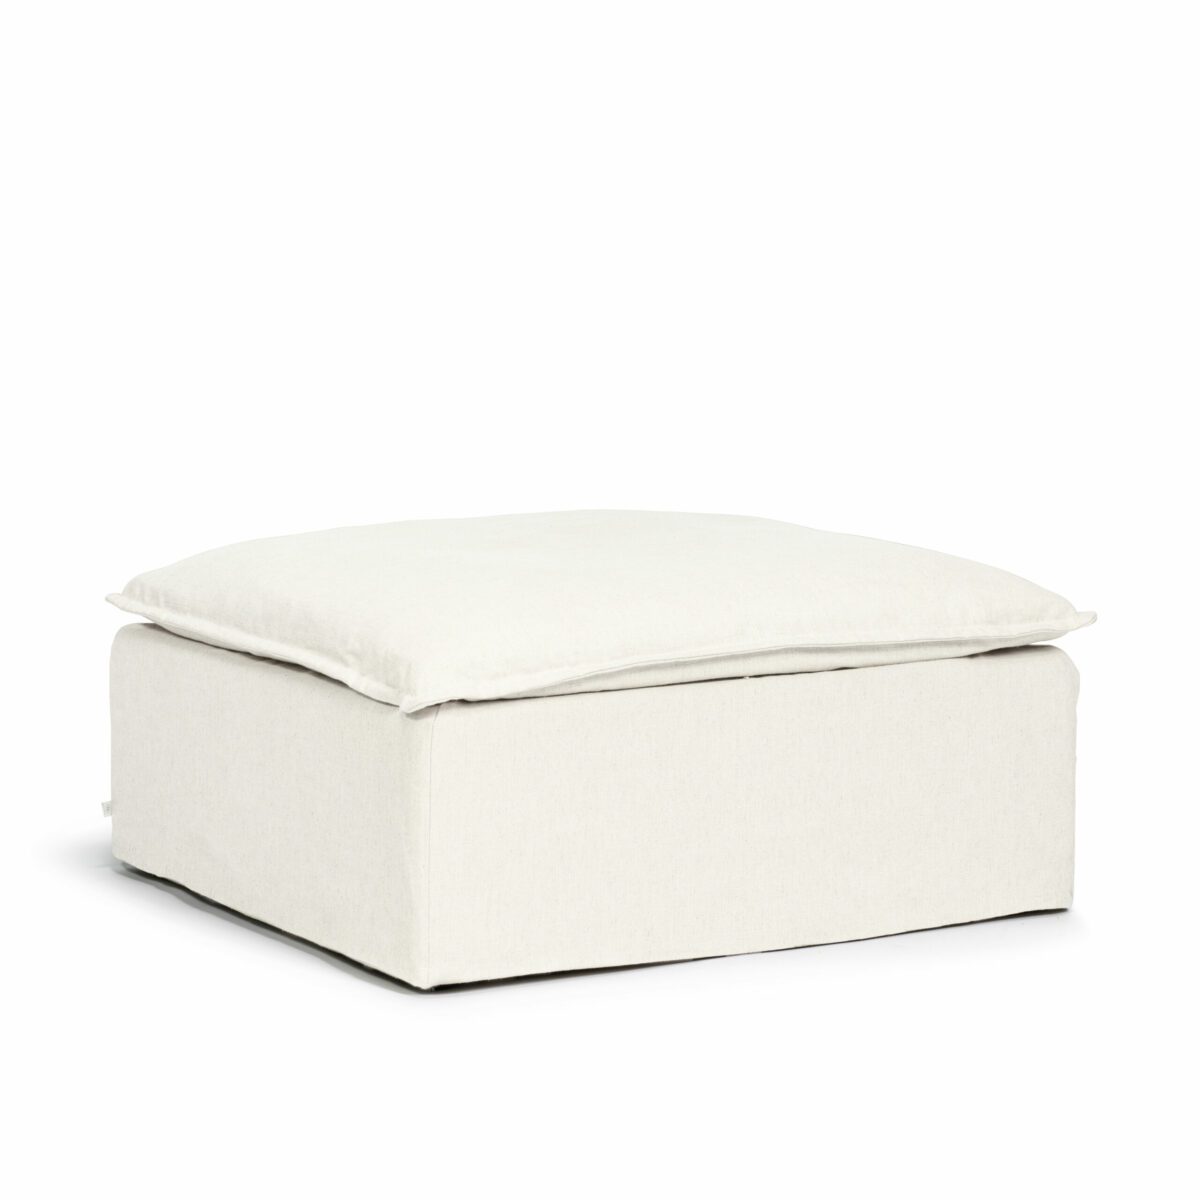 Luca Original 2-Seat Sofa True White